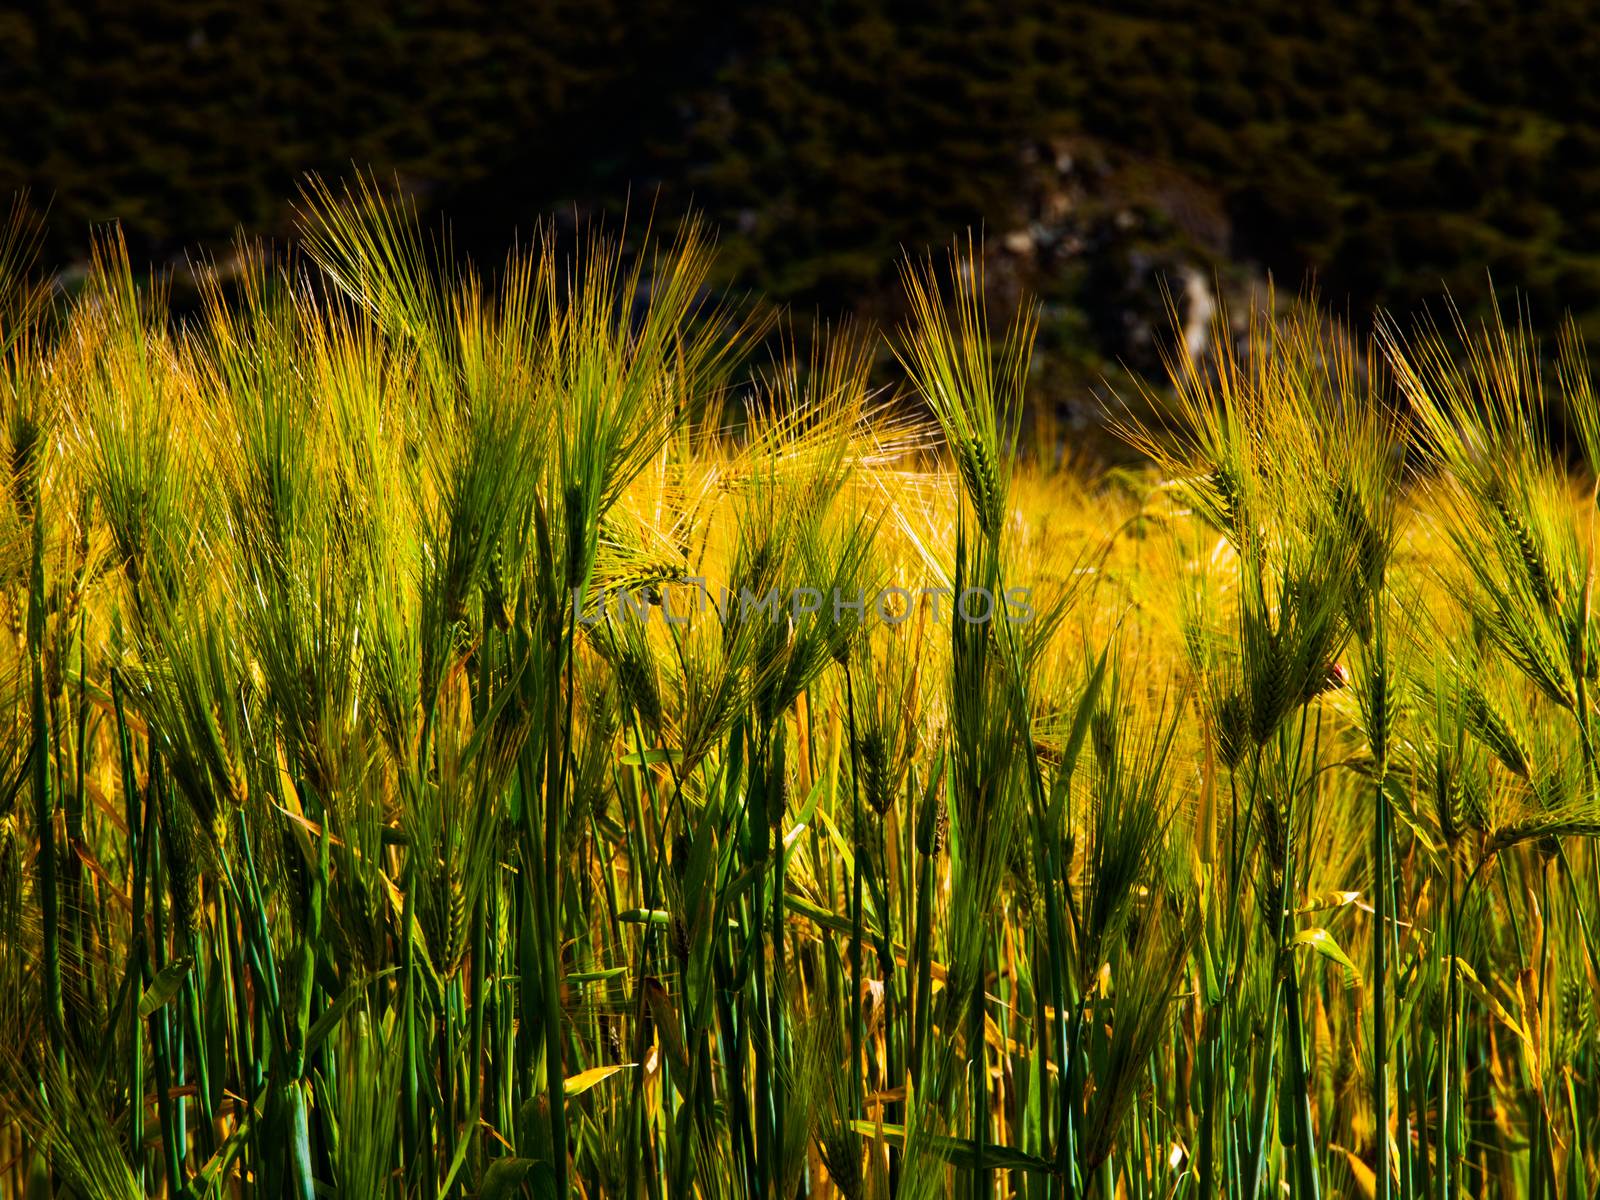 Grain field by pyty